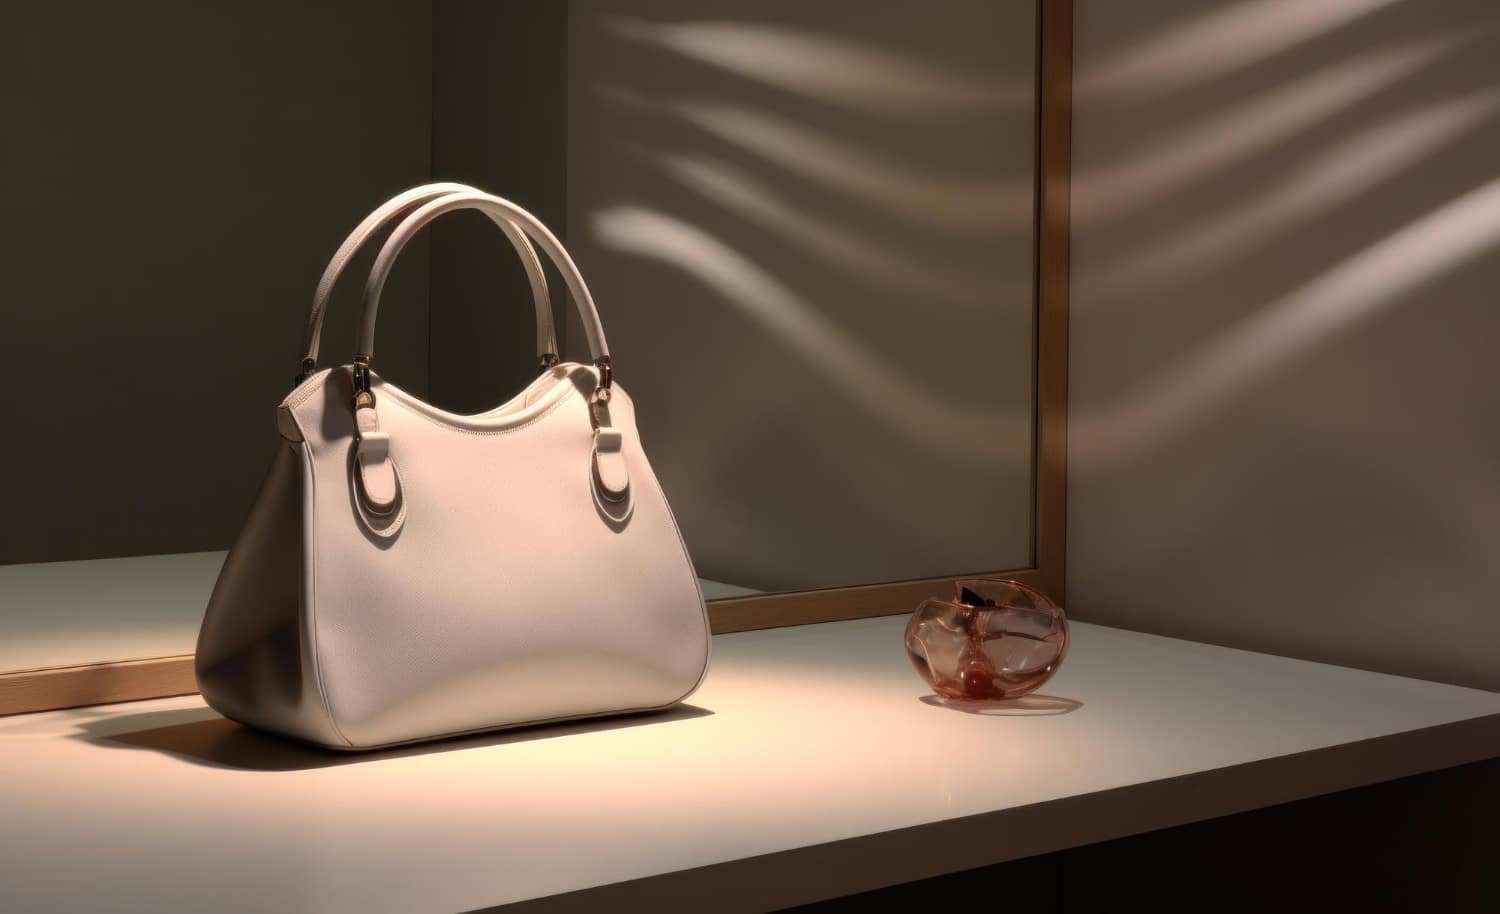 MANSUR GAVRIEL: Minimalist Luxury Handbags and Accessories